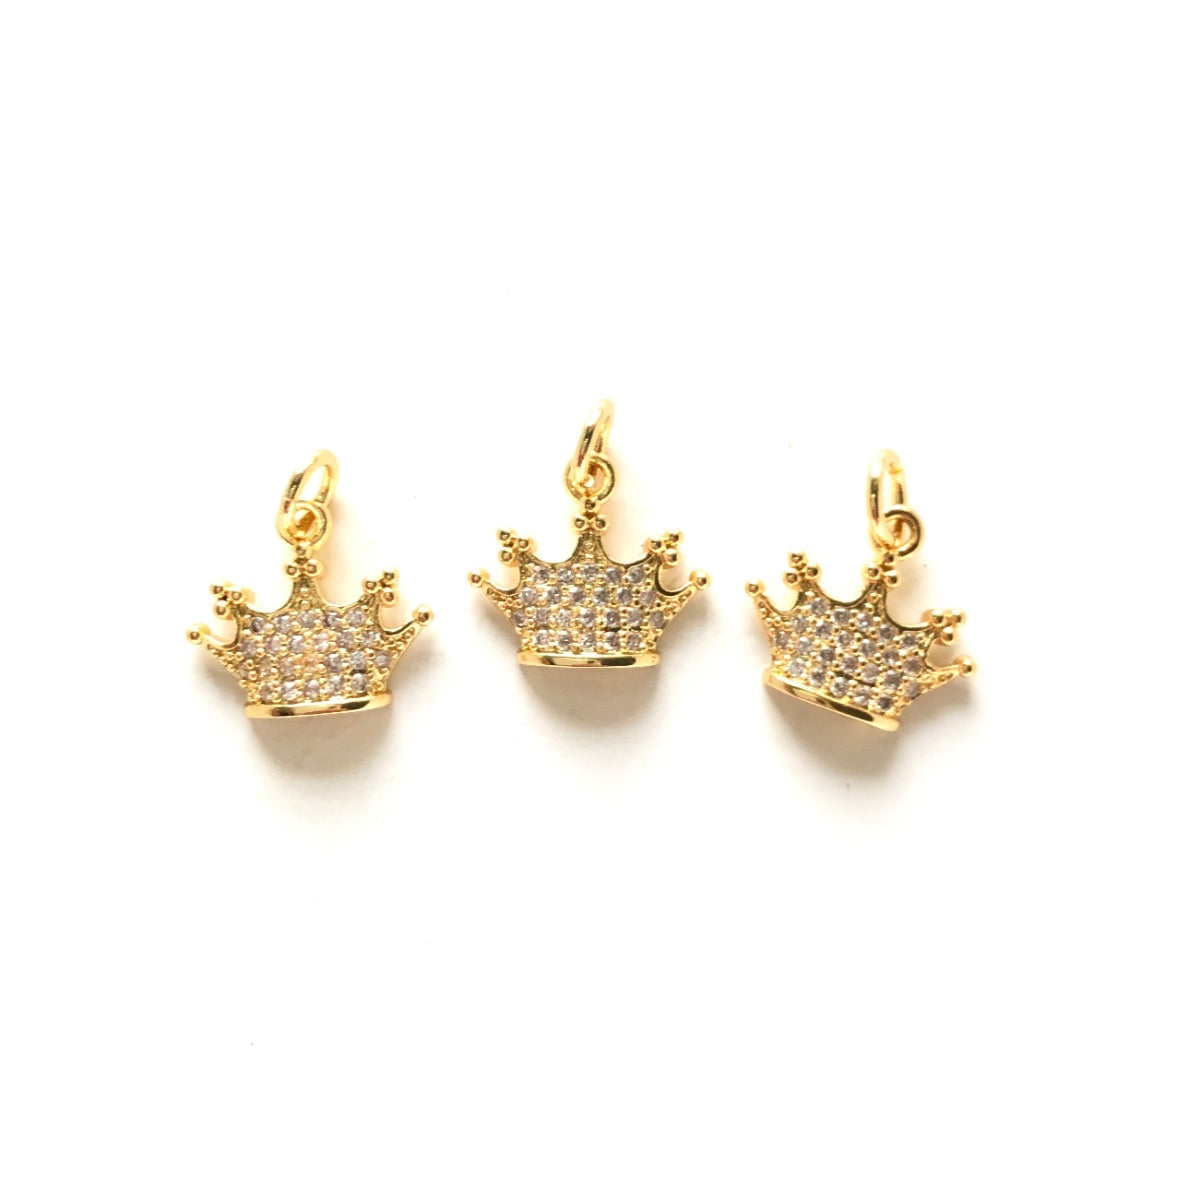 10pcs/lot 12.5*11mm Small Size CZ Pave Crown Charms Gold CZ Paved Charms Crowns Small Sizes Charms Beads Beyond